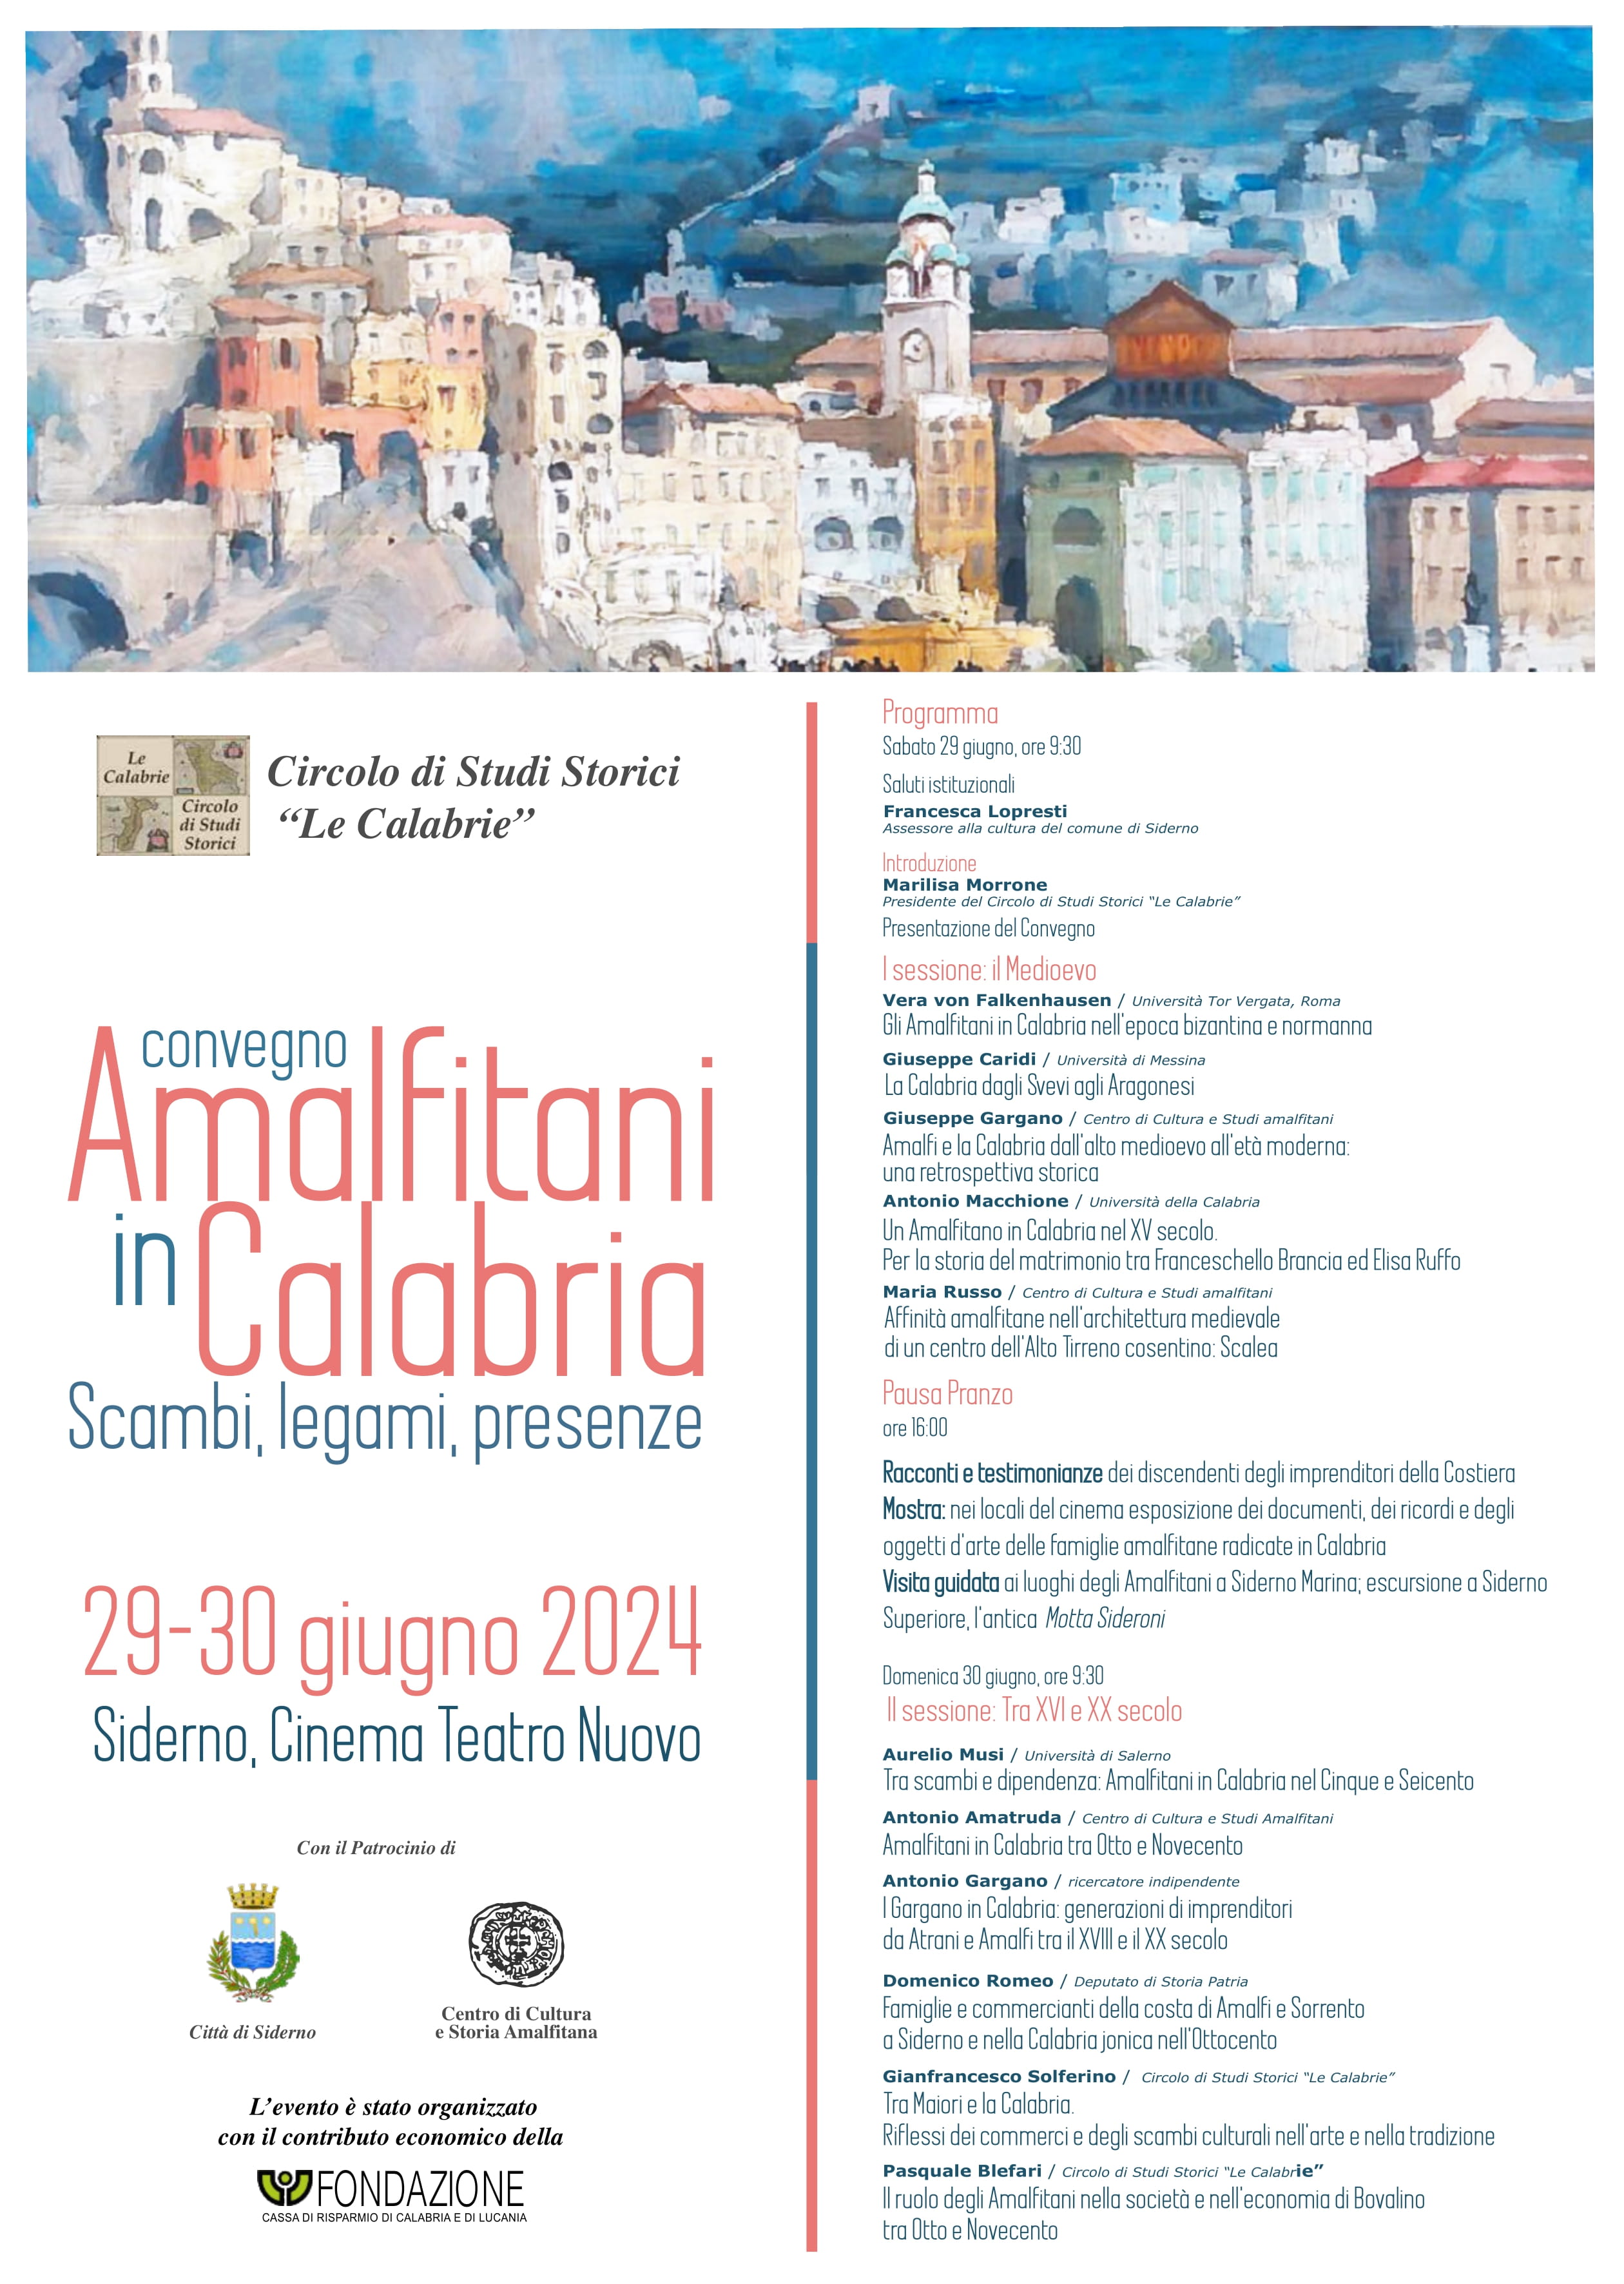 Sabato 29 e domenica 30 il convegno "Amalfitani in Calabria. Scambi, legami, presenze"